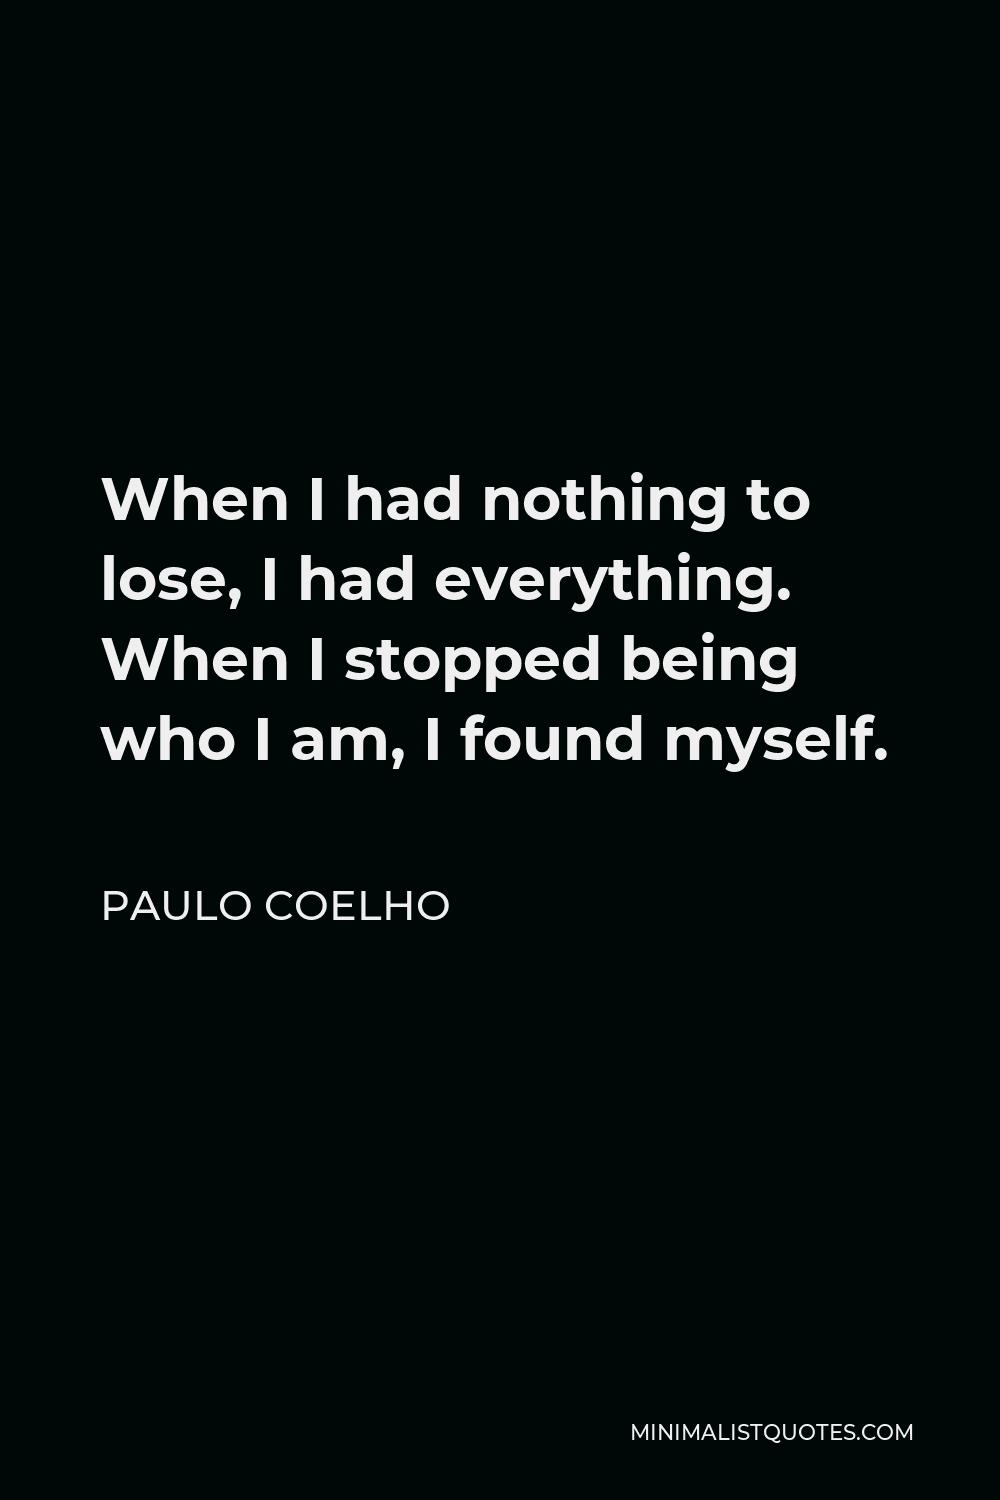 Paulo Coelho Quotes | Minimalist Quotes